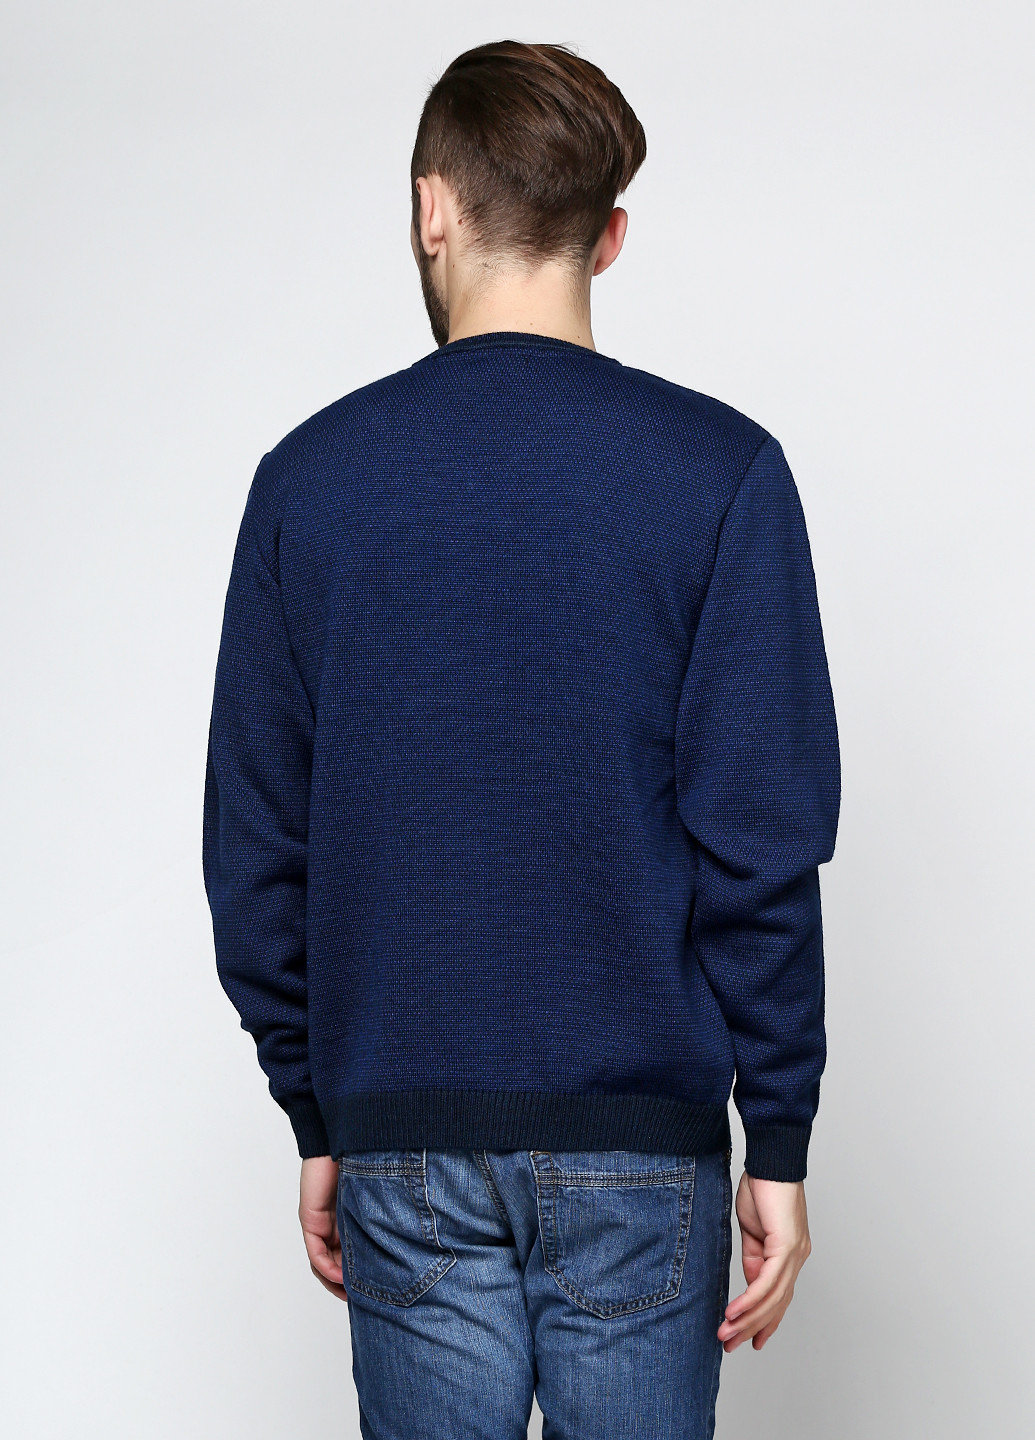 Темно-синій демісезонний пуловер пуловер Belika